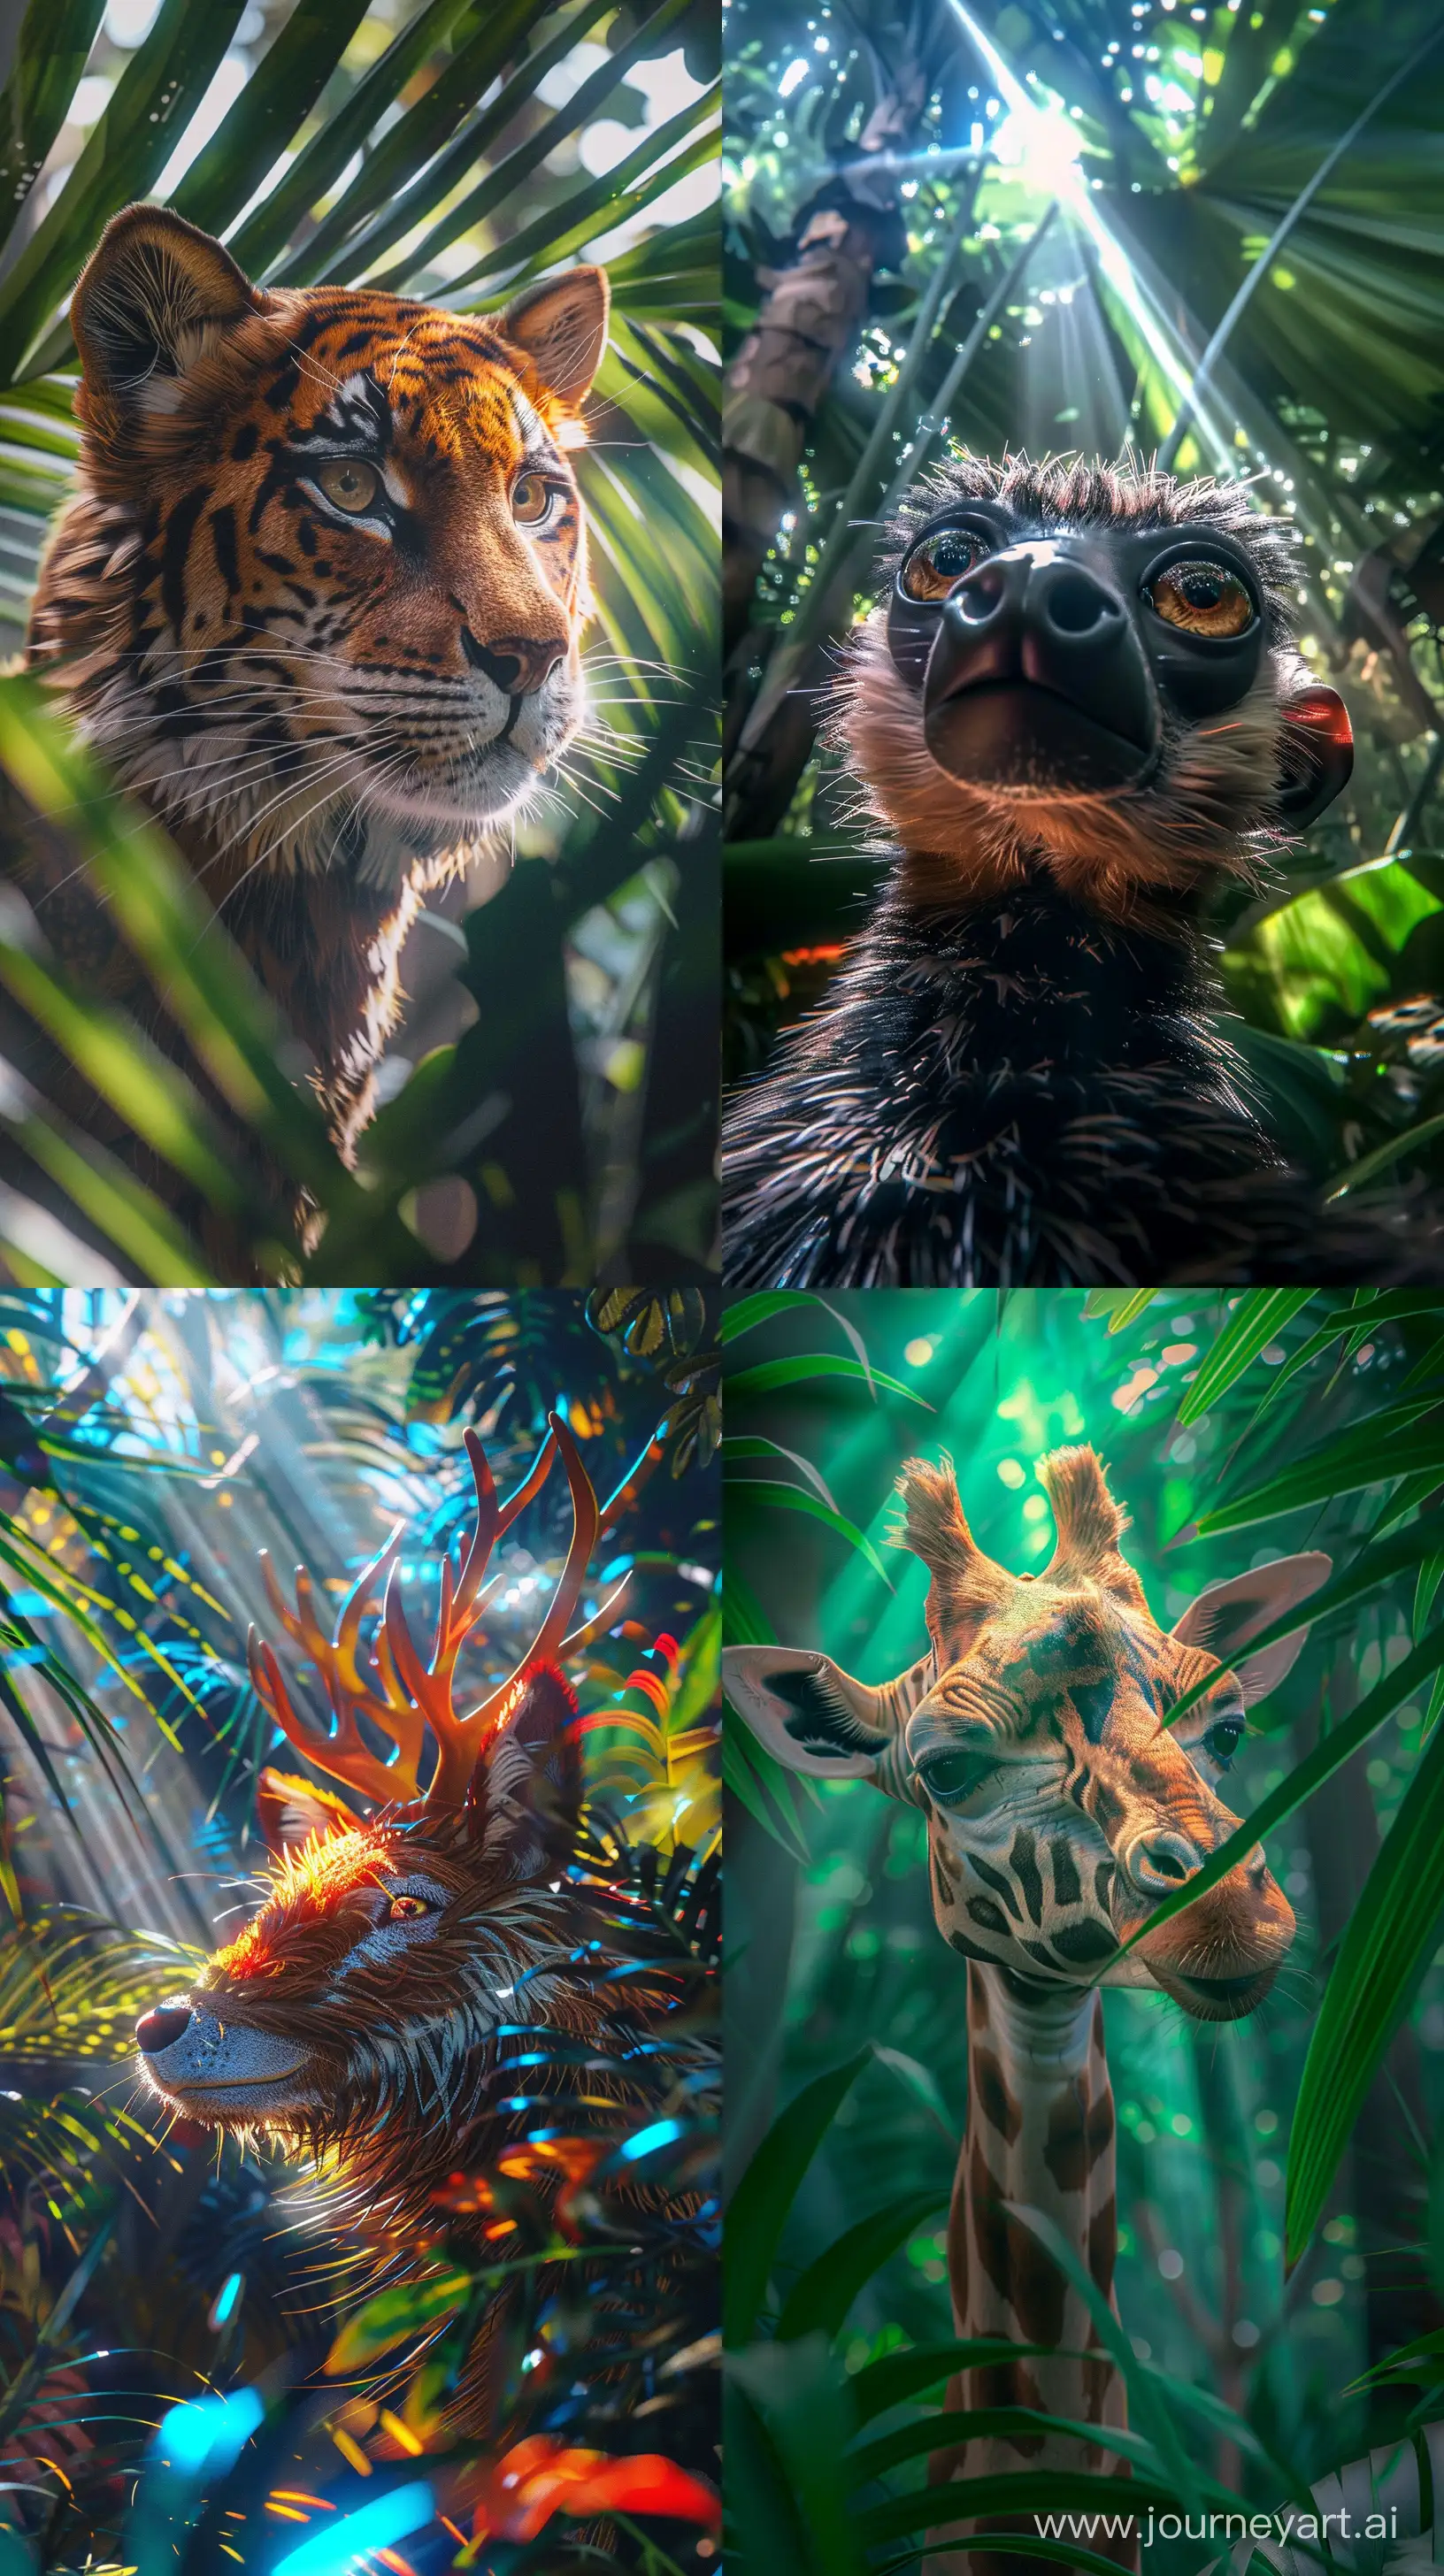 Enchanting-Tajik-Wildlife-Selfie-in-Jungle-Wonderland